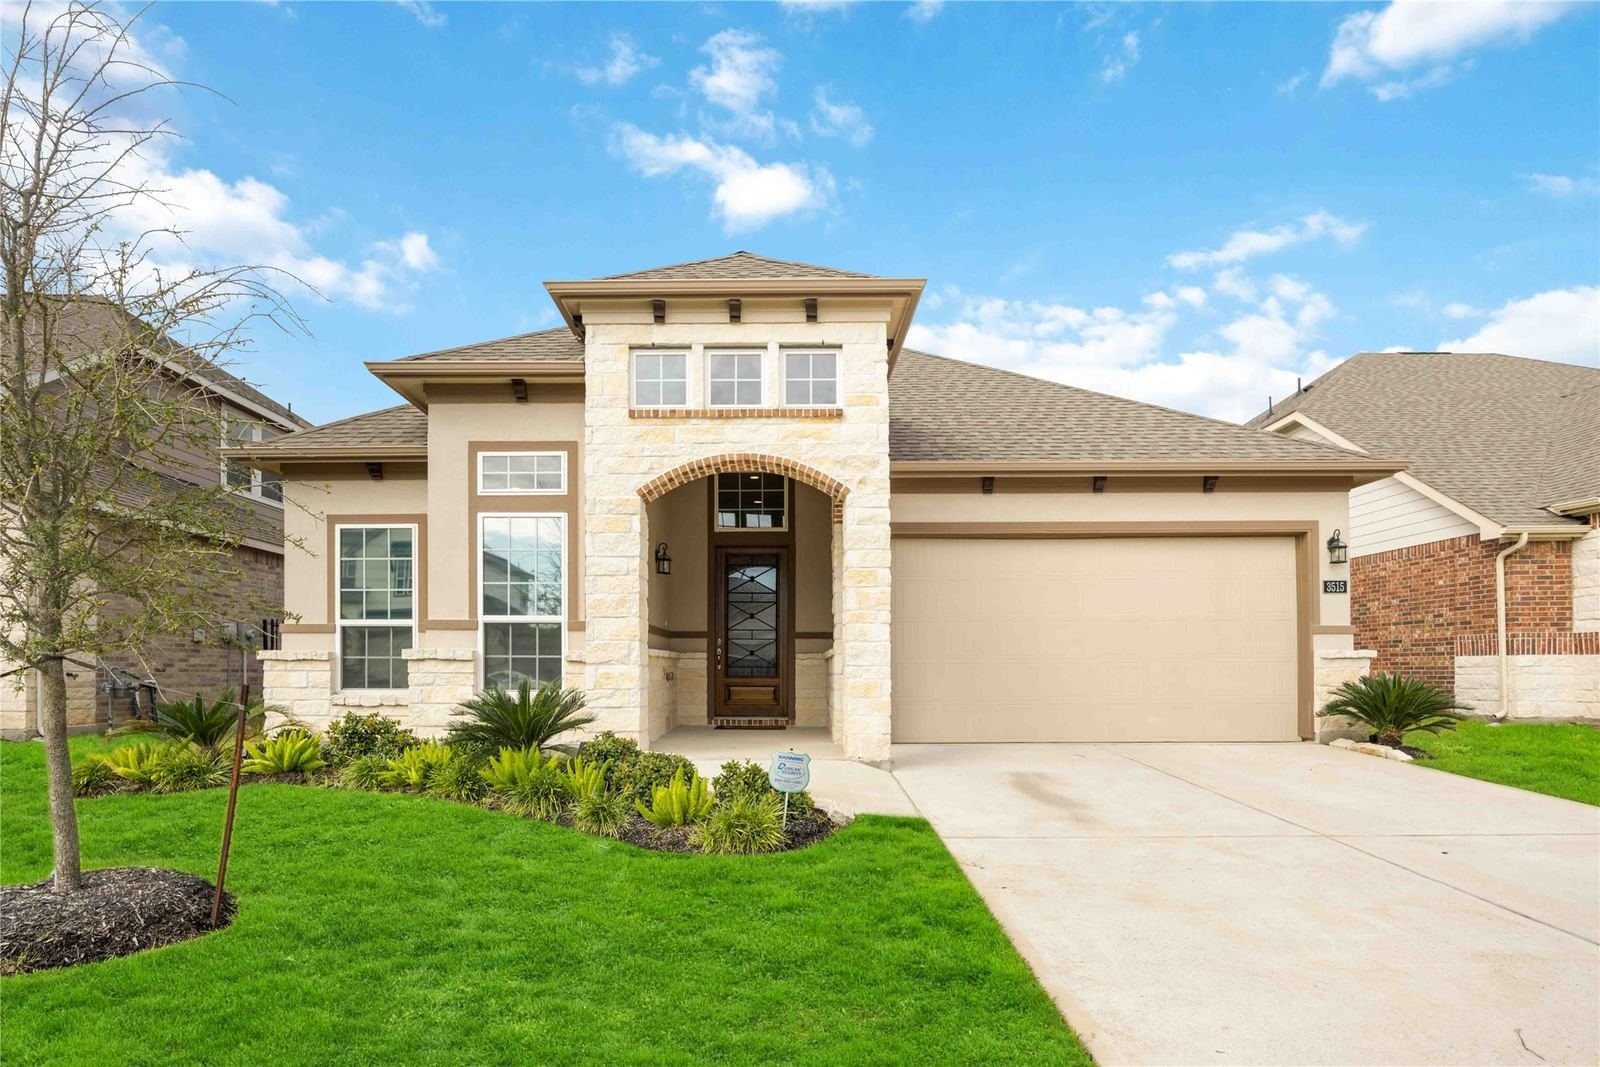 Real estate property located at 3515 Lake Varano, Harris, Marcello Lakes Sec 2, Katy, TX, US